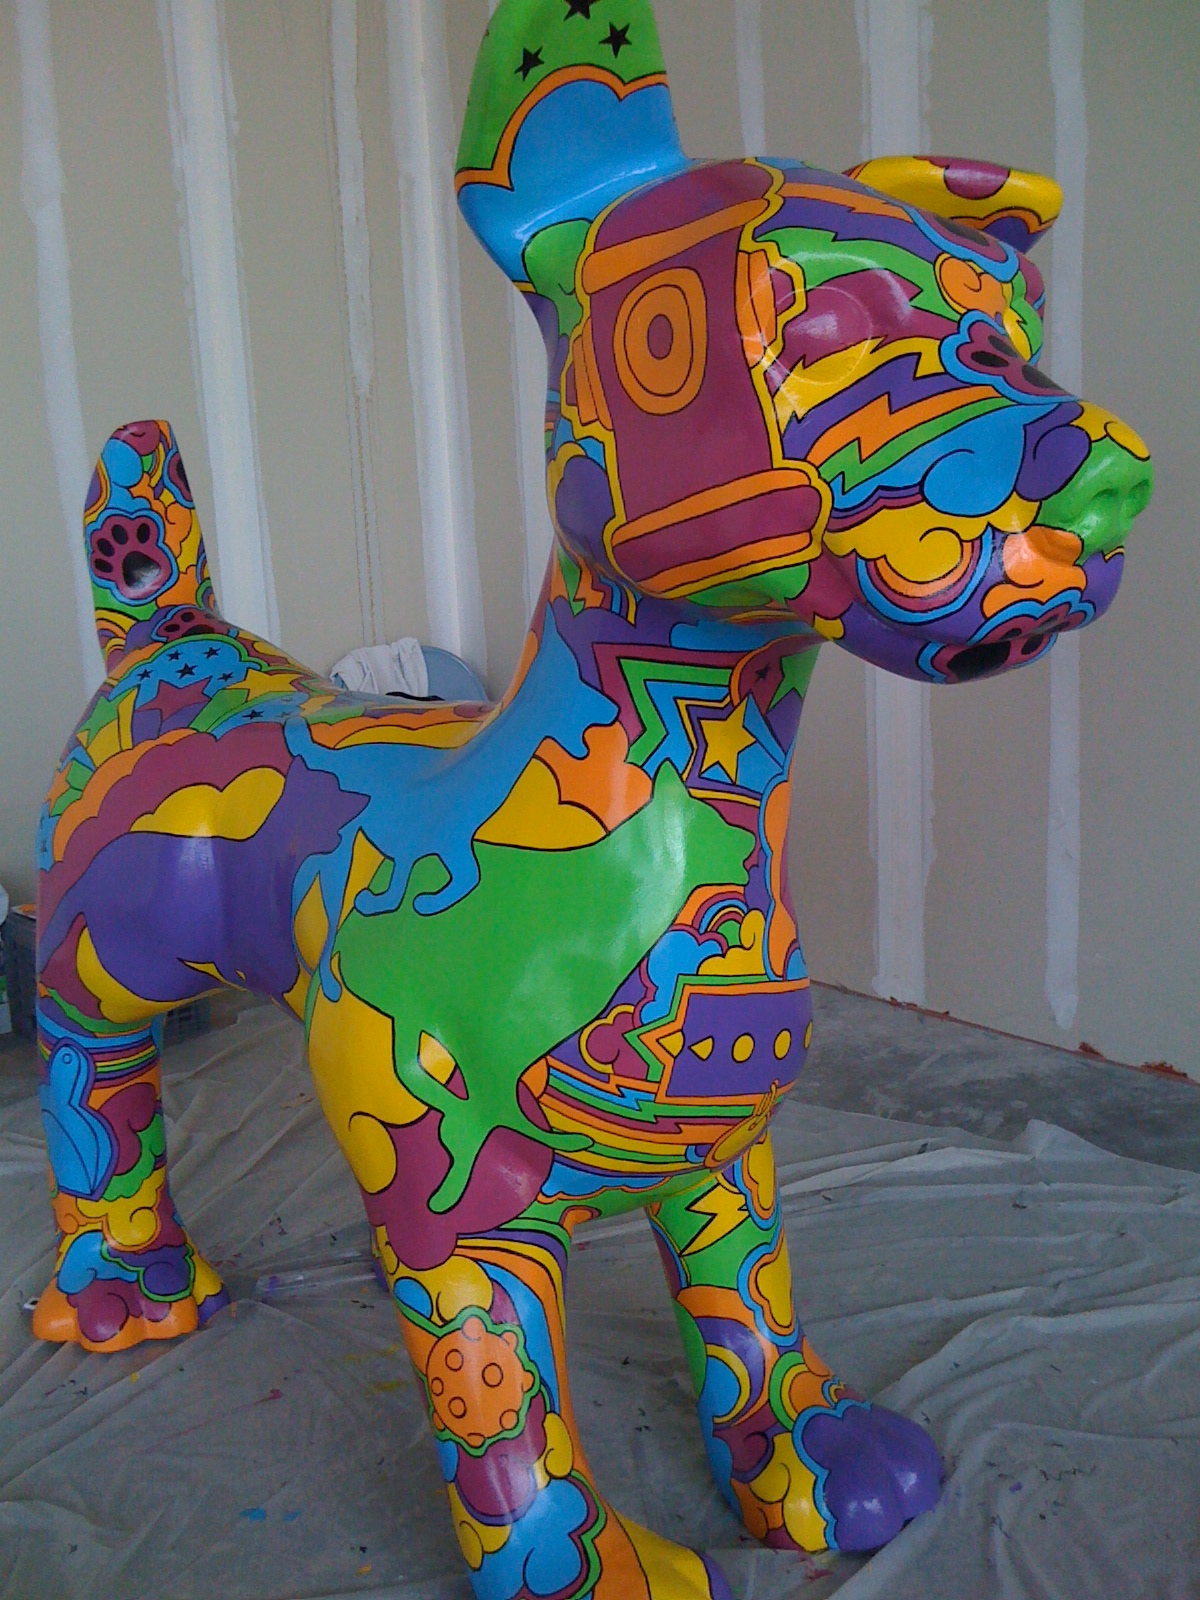 dog sculpture paint large scale 3D public art graphic